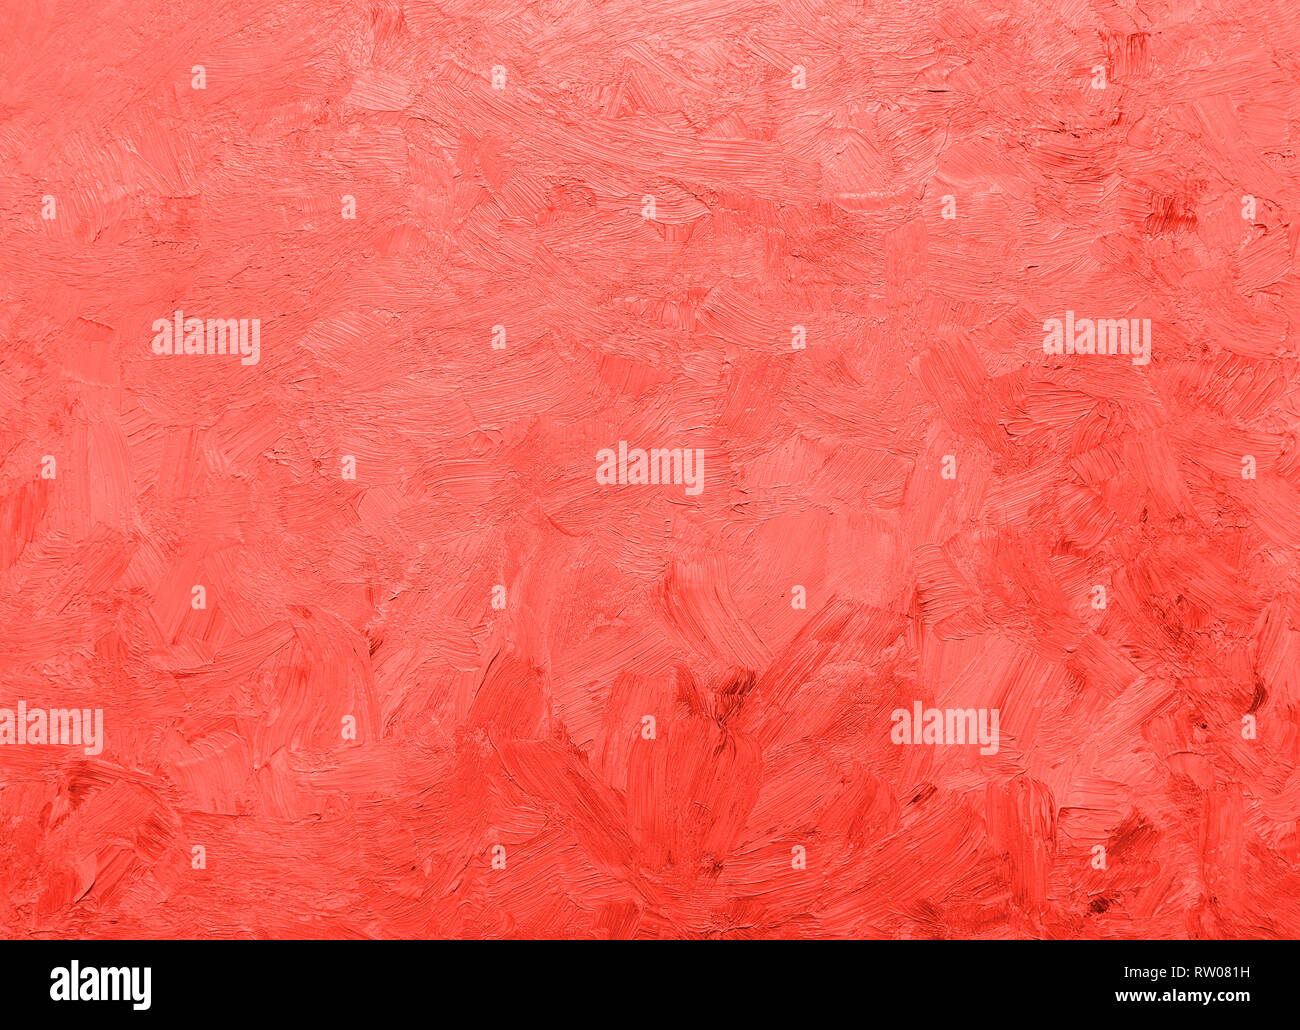 Pastellfarben Helle Rote Rose Farbig Lackierten Hintergrund Vollbild Ansicht Von Oben Stockfotografie Alamy